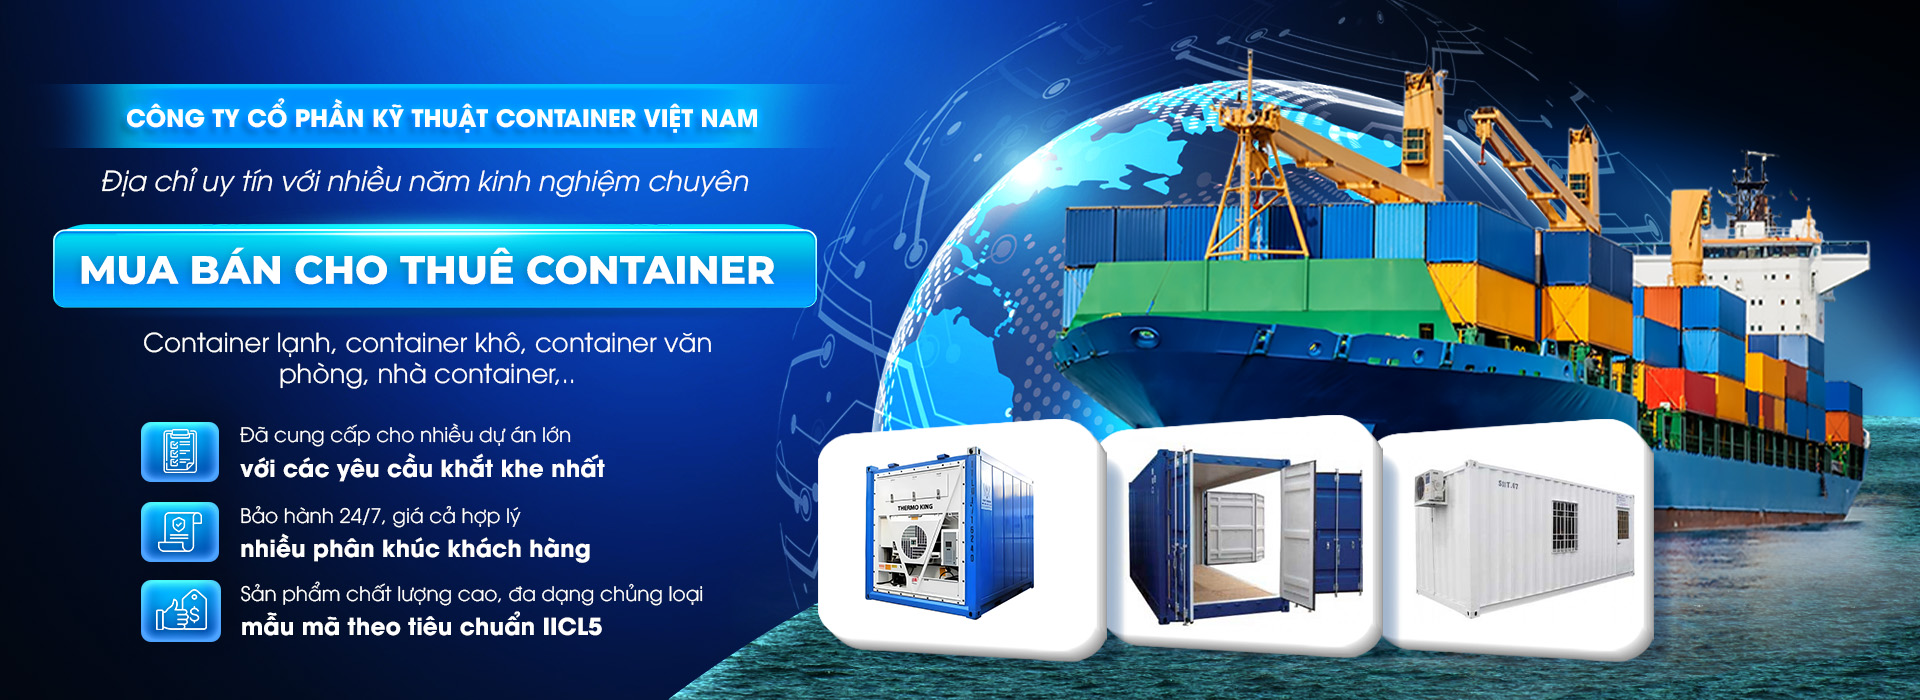 Công Ty Cổ Phần Kỹ Thuật Container Việt Nam